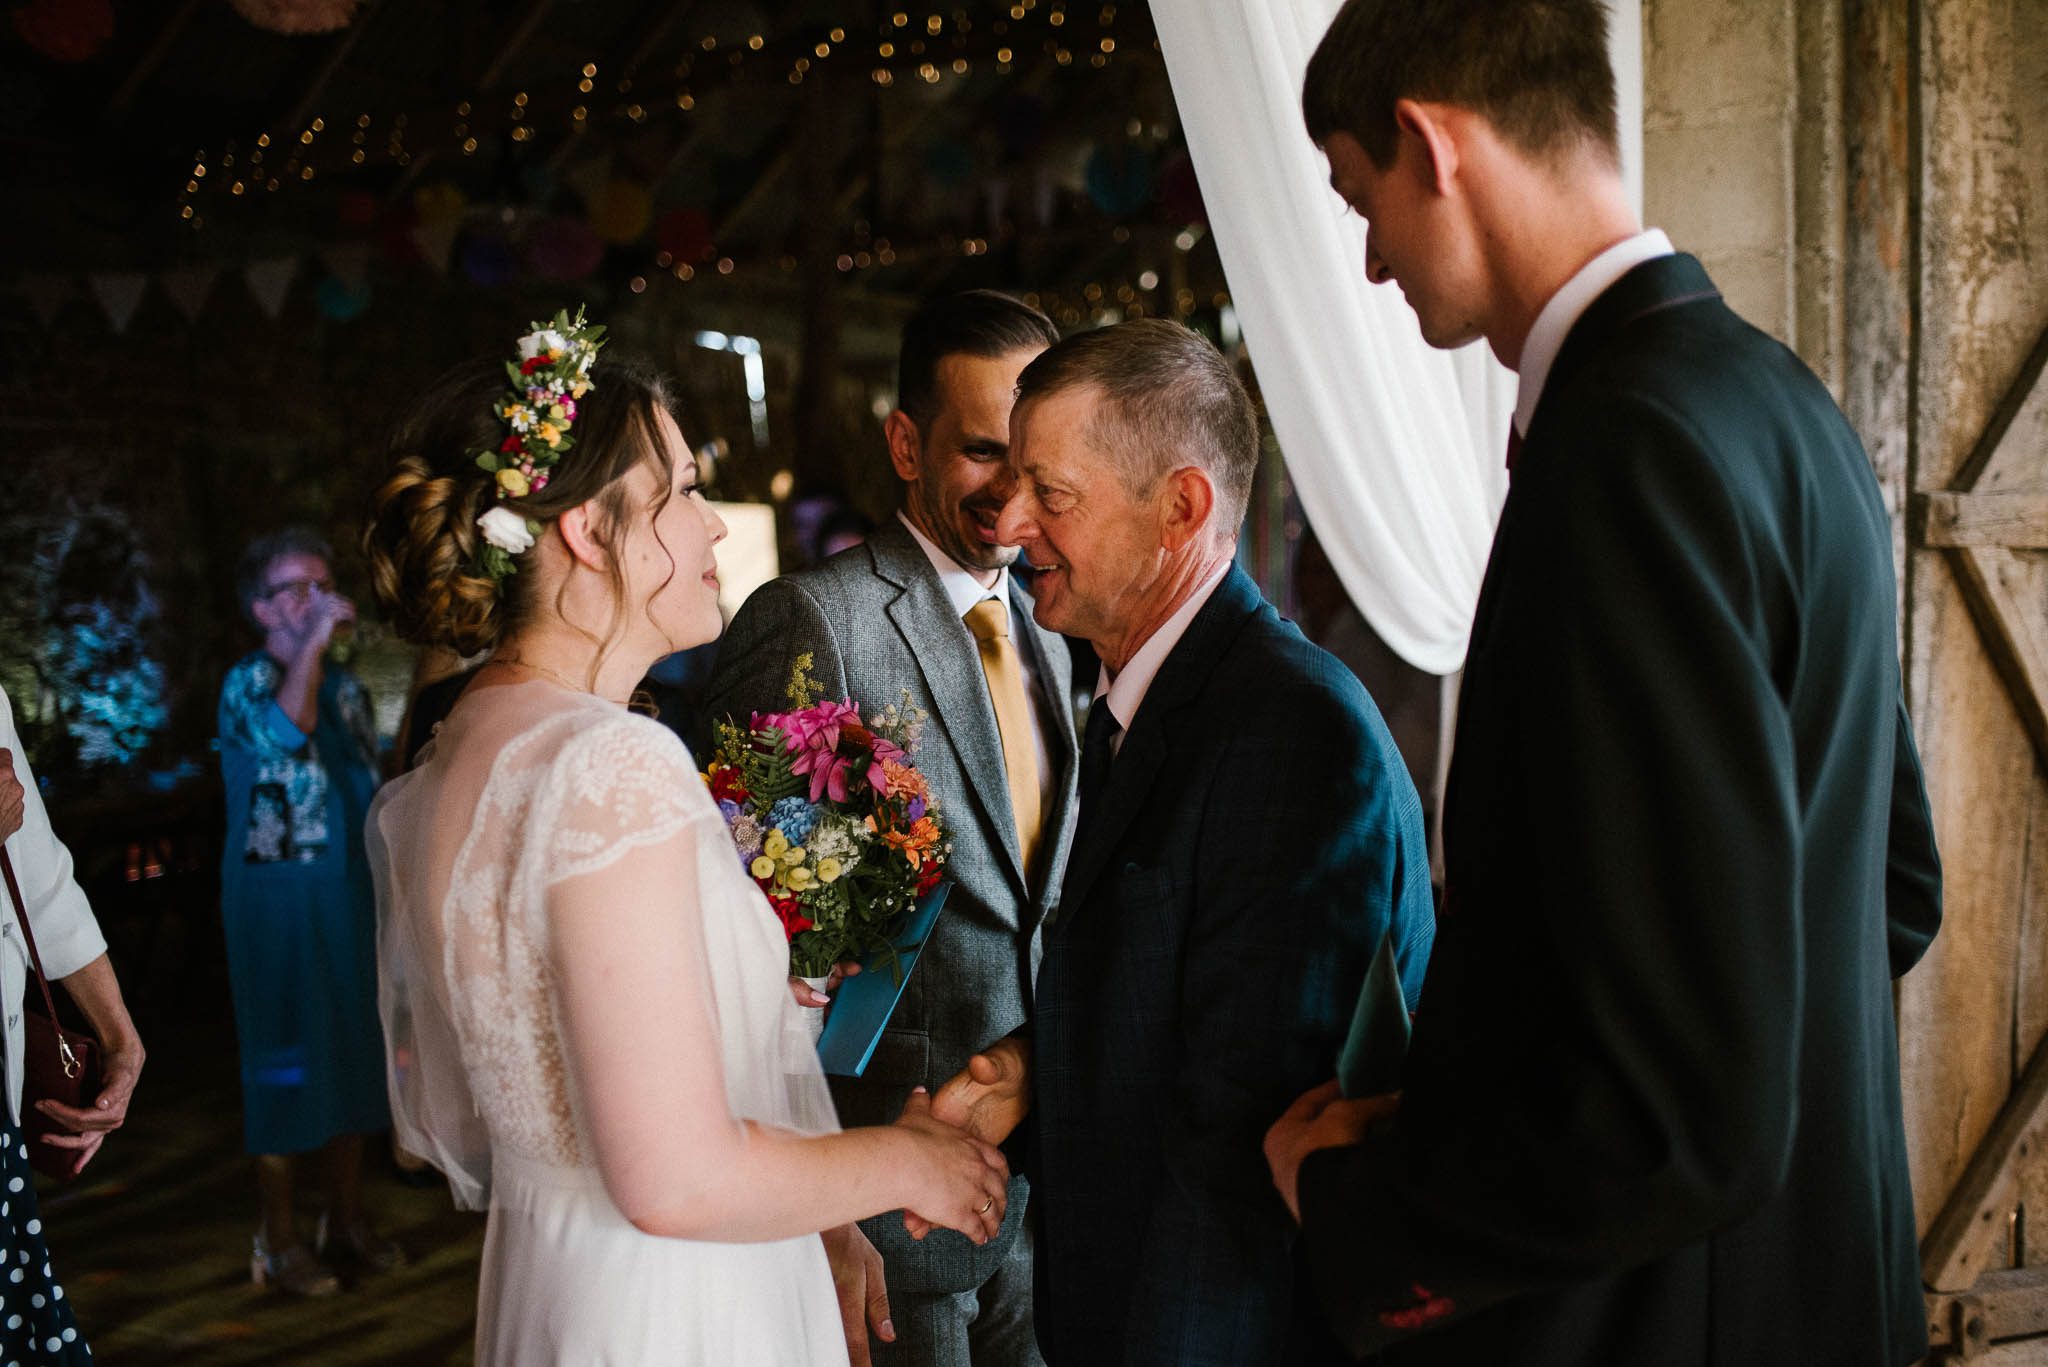 Goście składają życzenia nowożeńcom - wesele w stodole w Dyrkowie